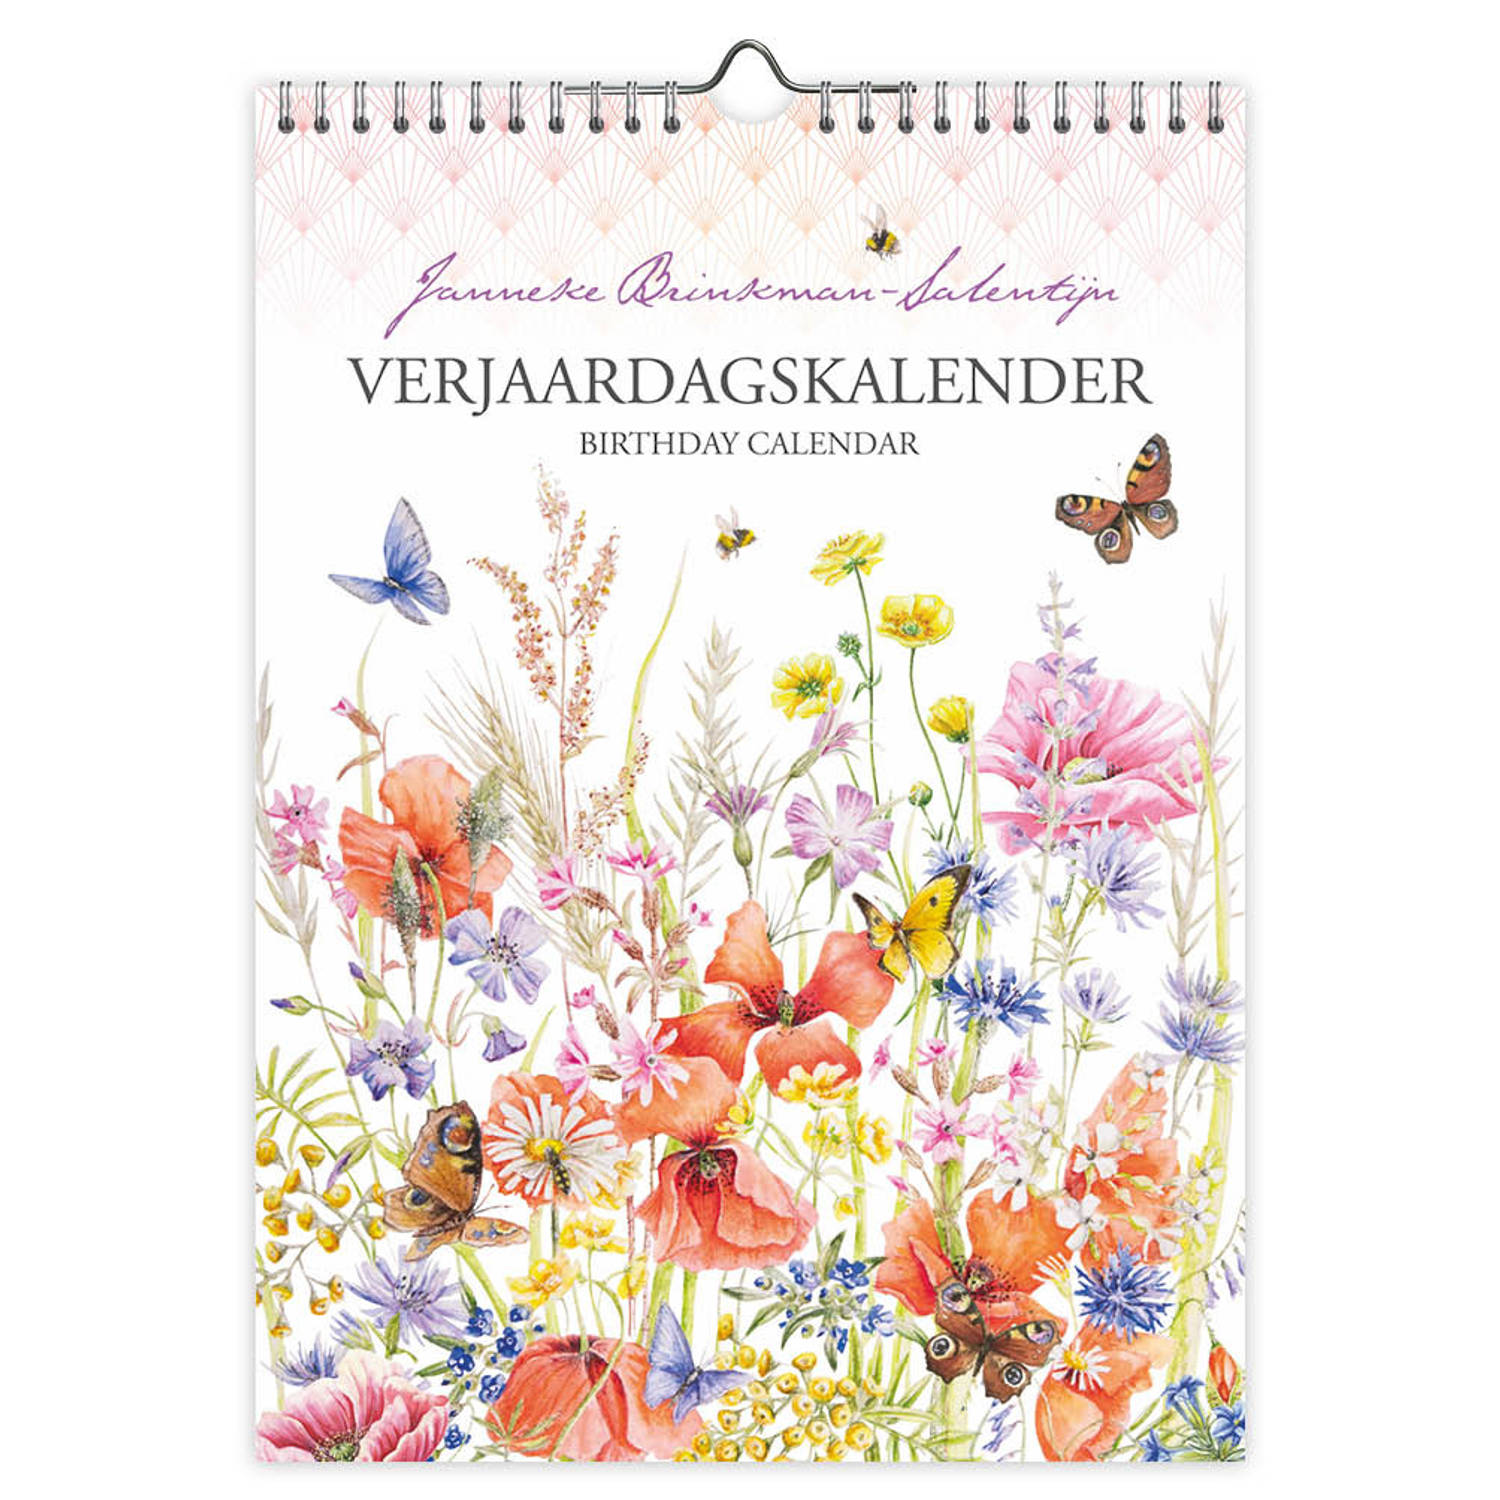 Janneke Brinkman Klaproos Verjaardagkalender